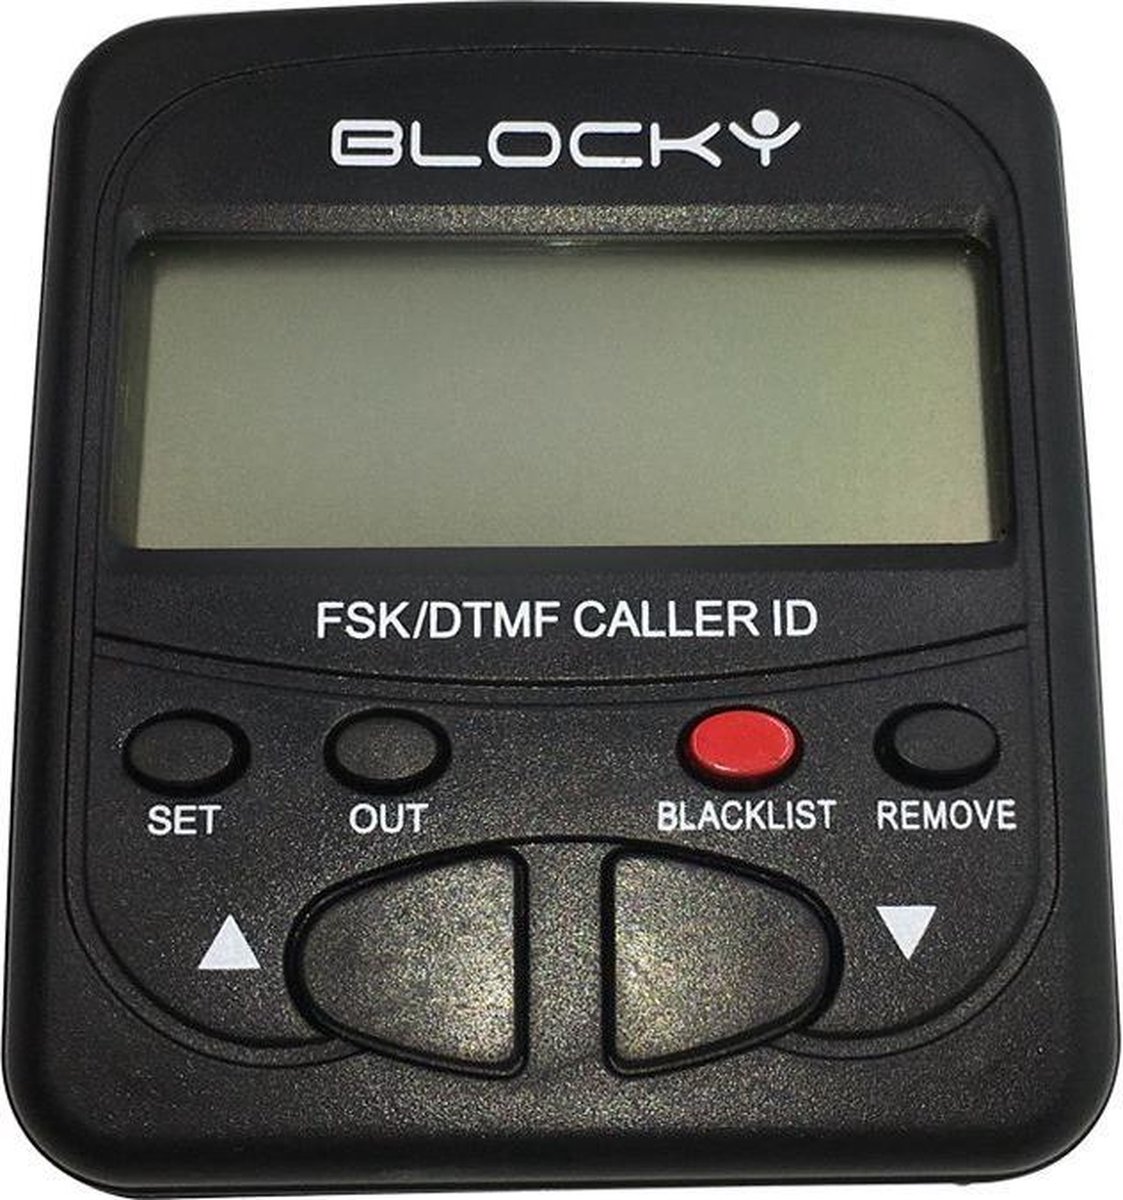 BLOCKY-Call Blocker - NUMMERMELDER met BLOKKEERMOGELIJKHEID